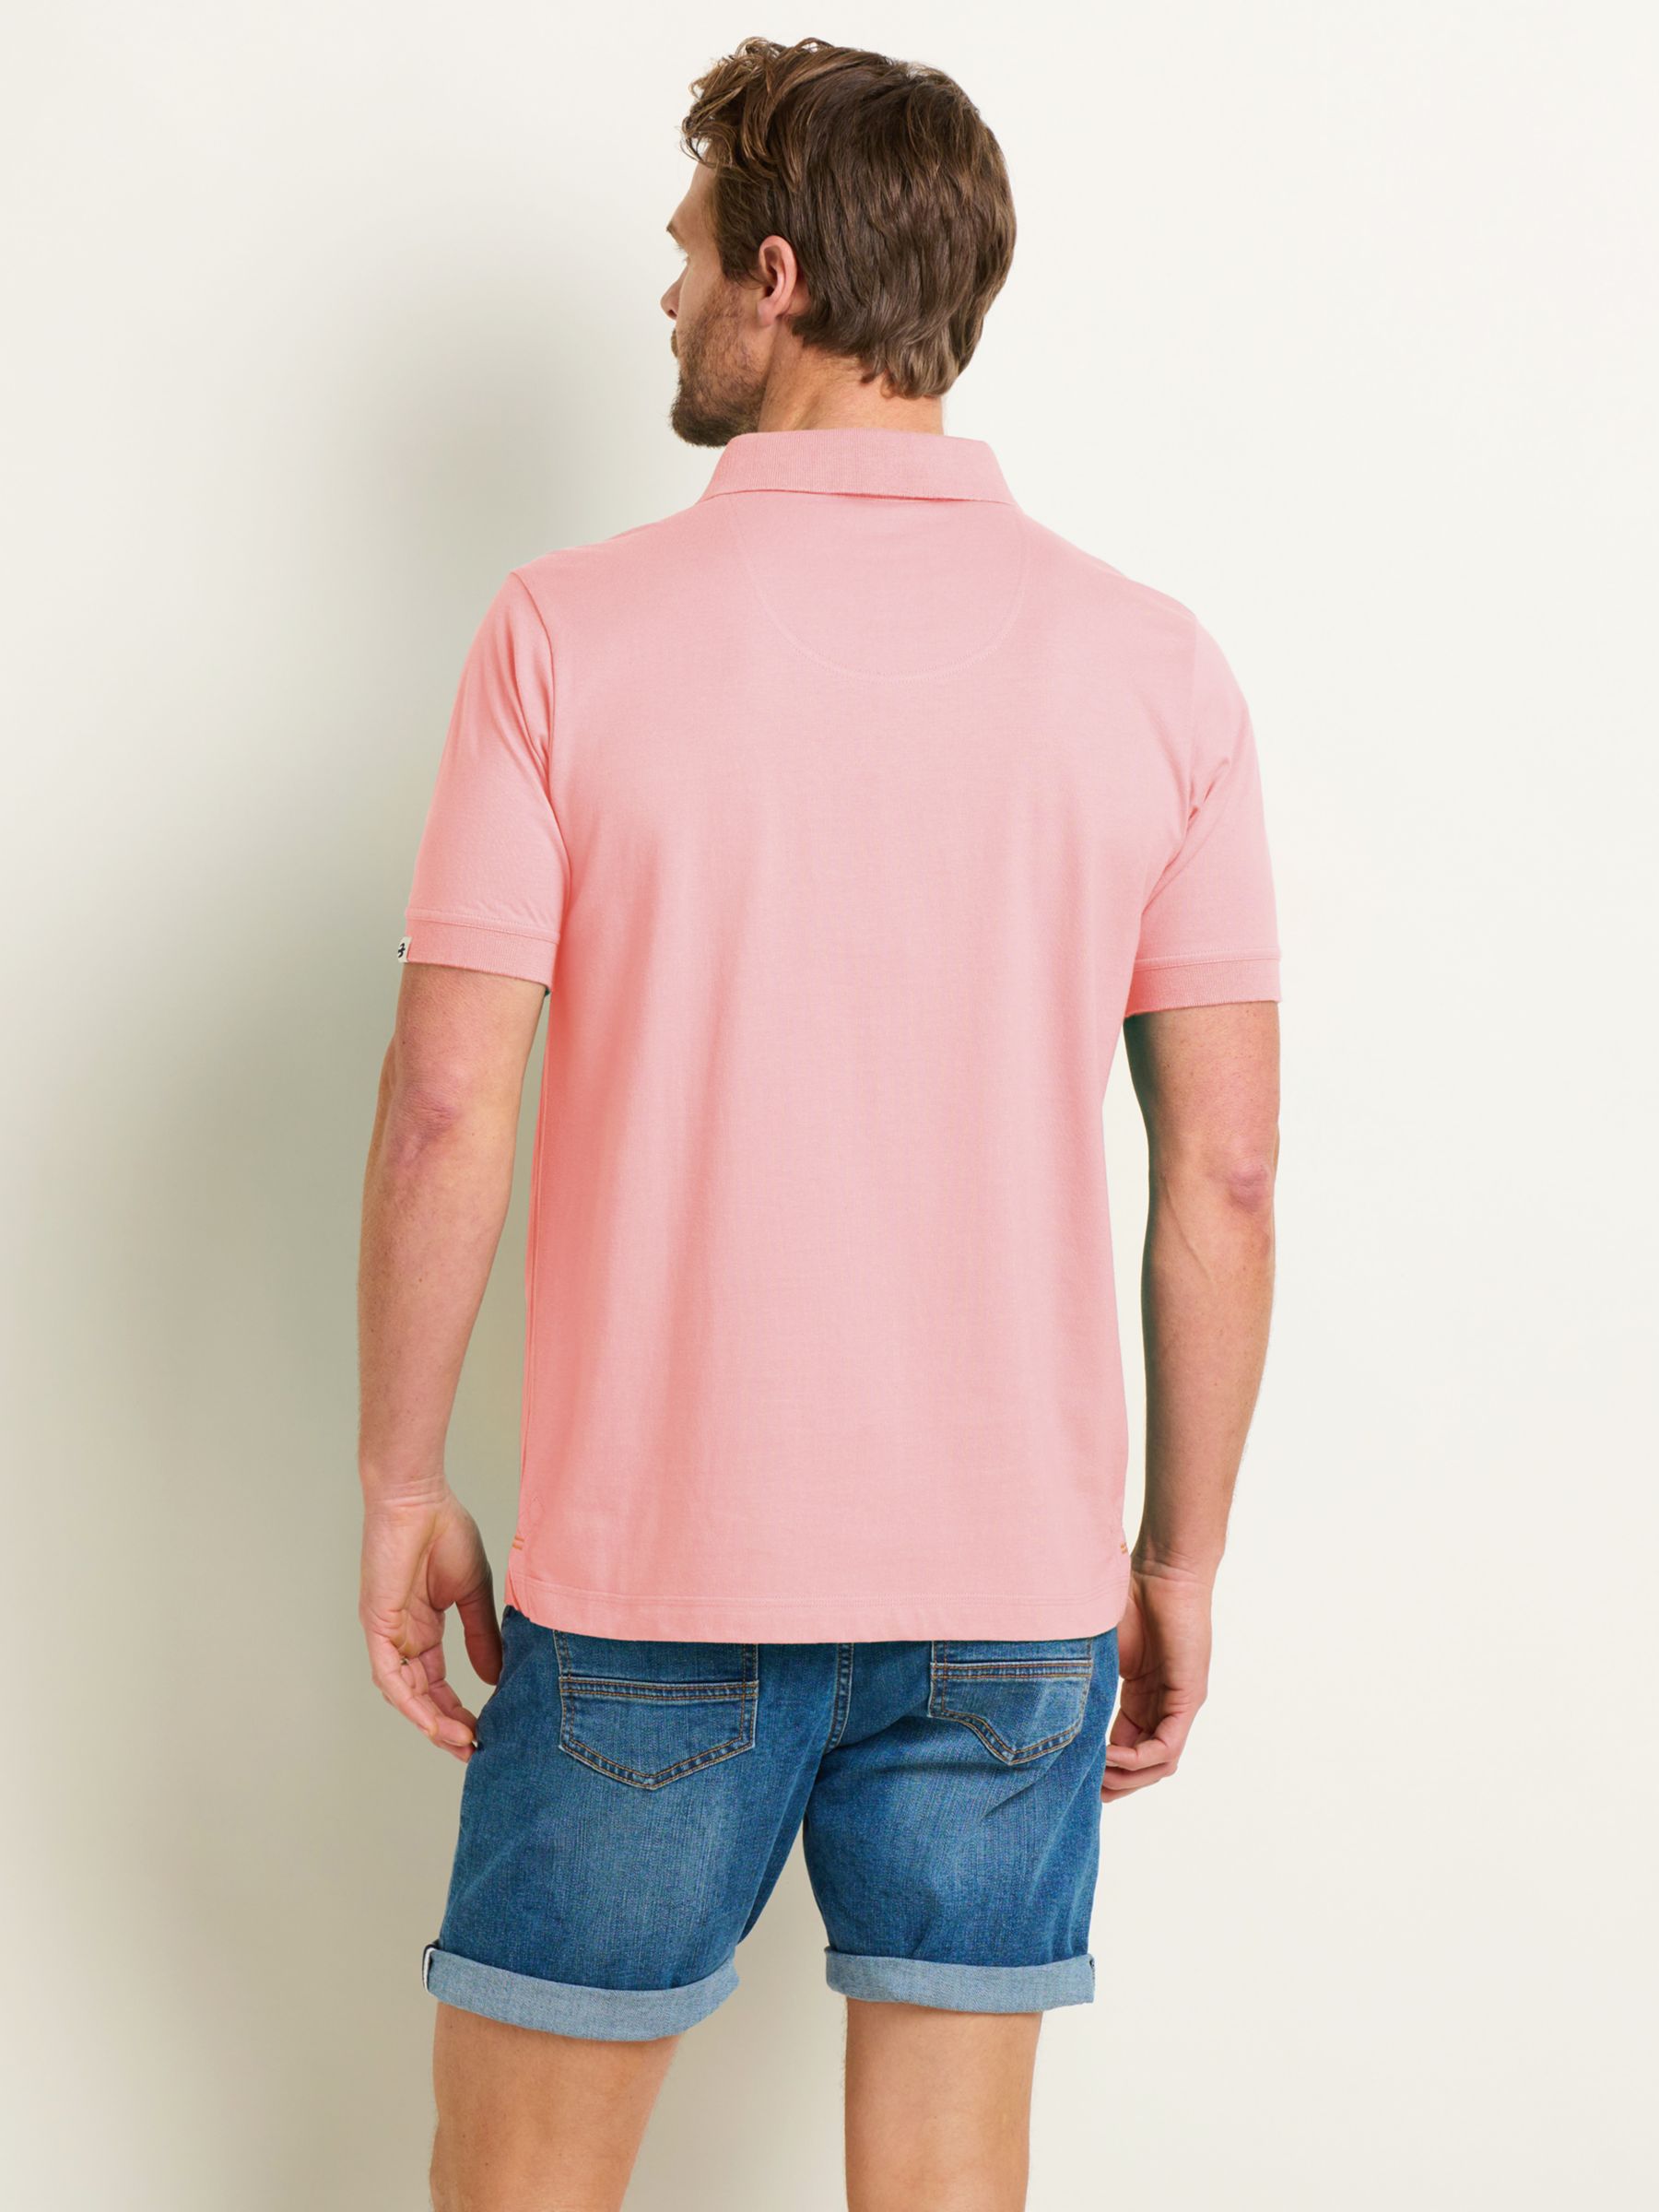 Brakeburn Plain Polo Shirt, Pink, L